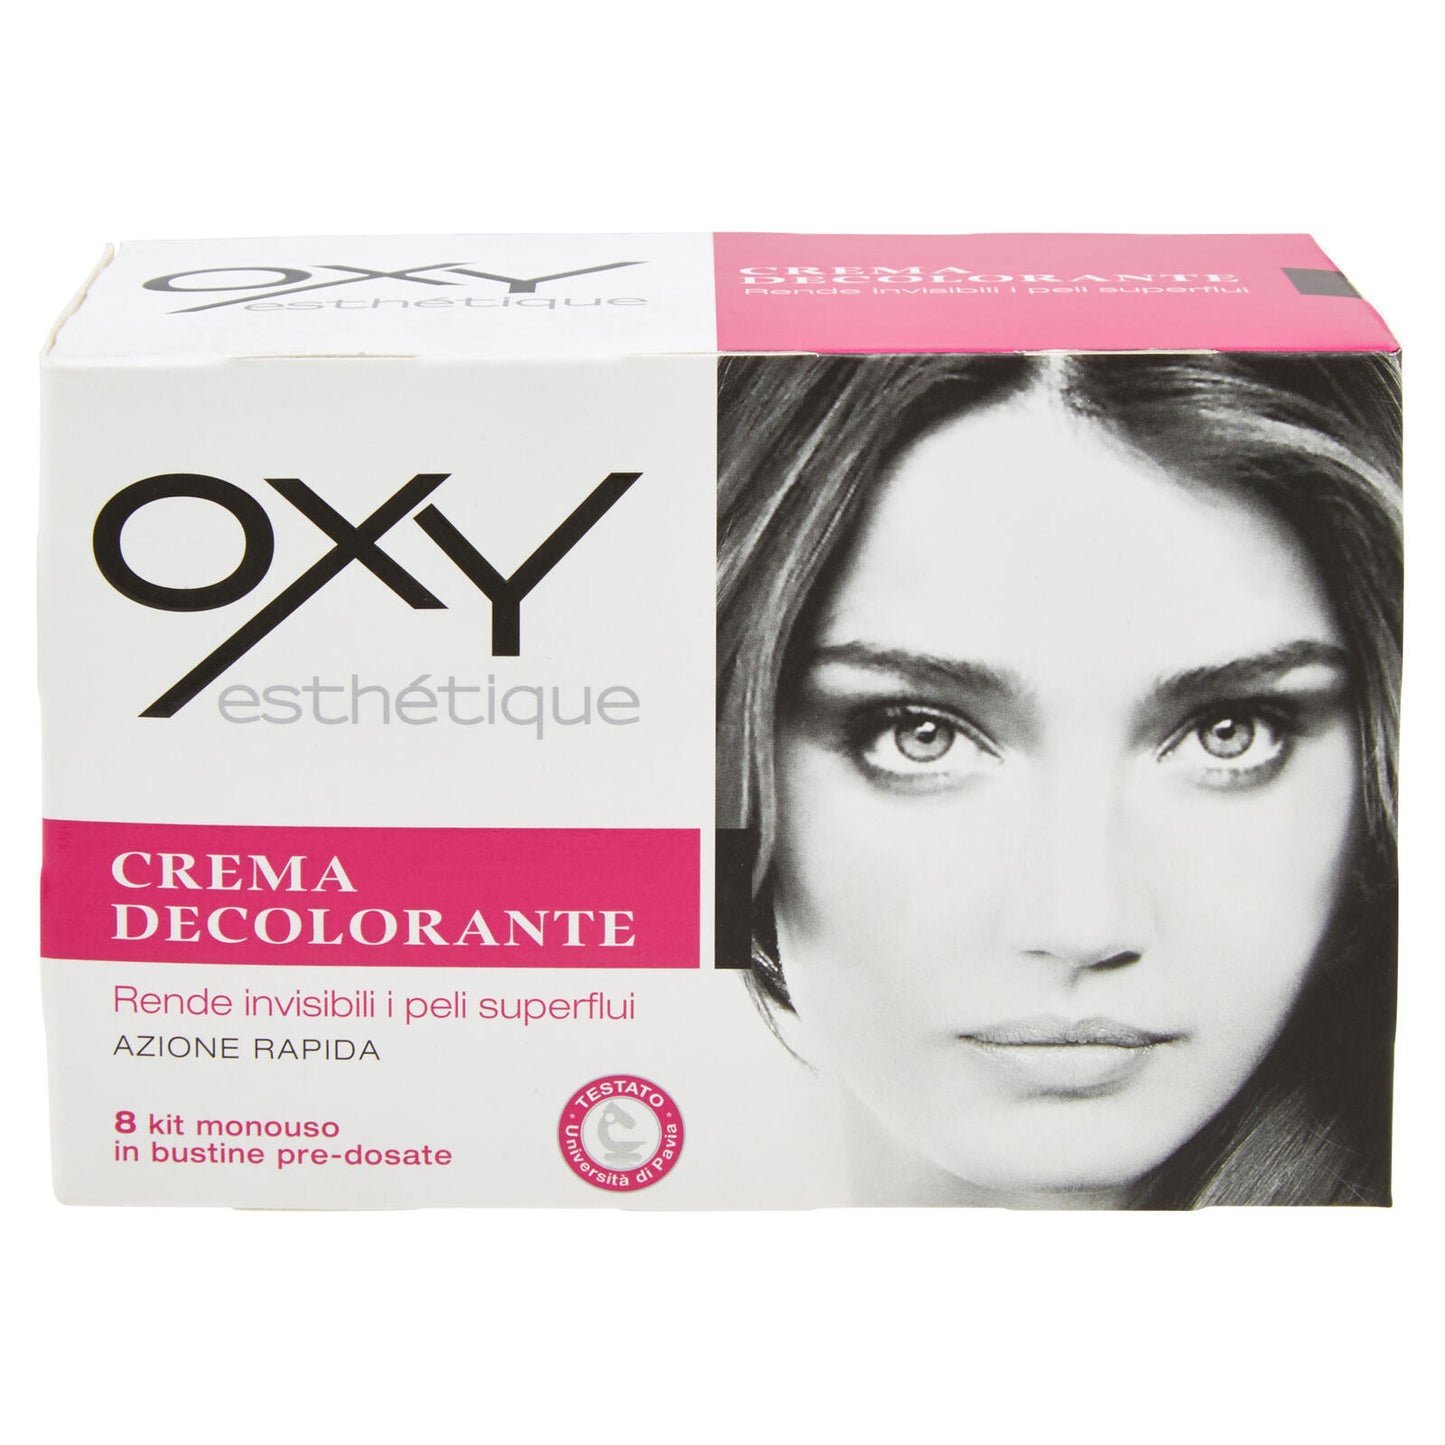 Oxy esthétique Crema Decolorante 8 kit monouso in bustine pre-dosate 75 ml